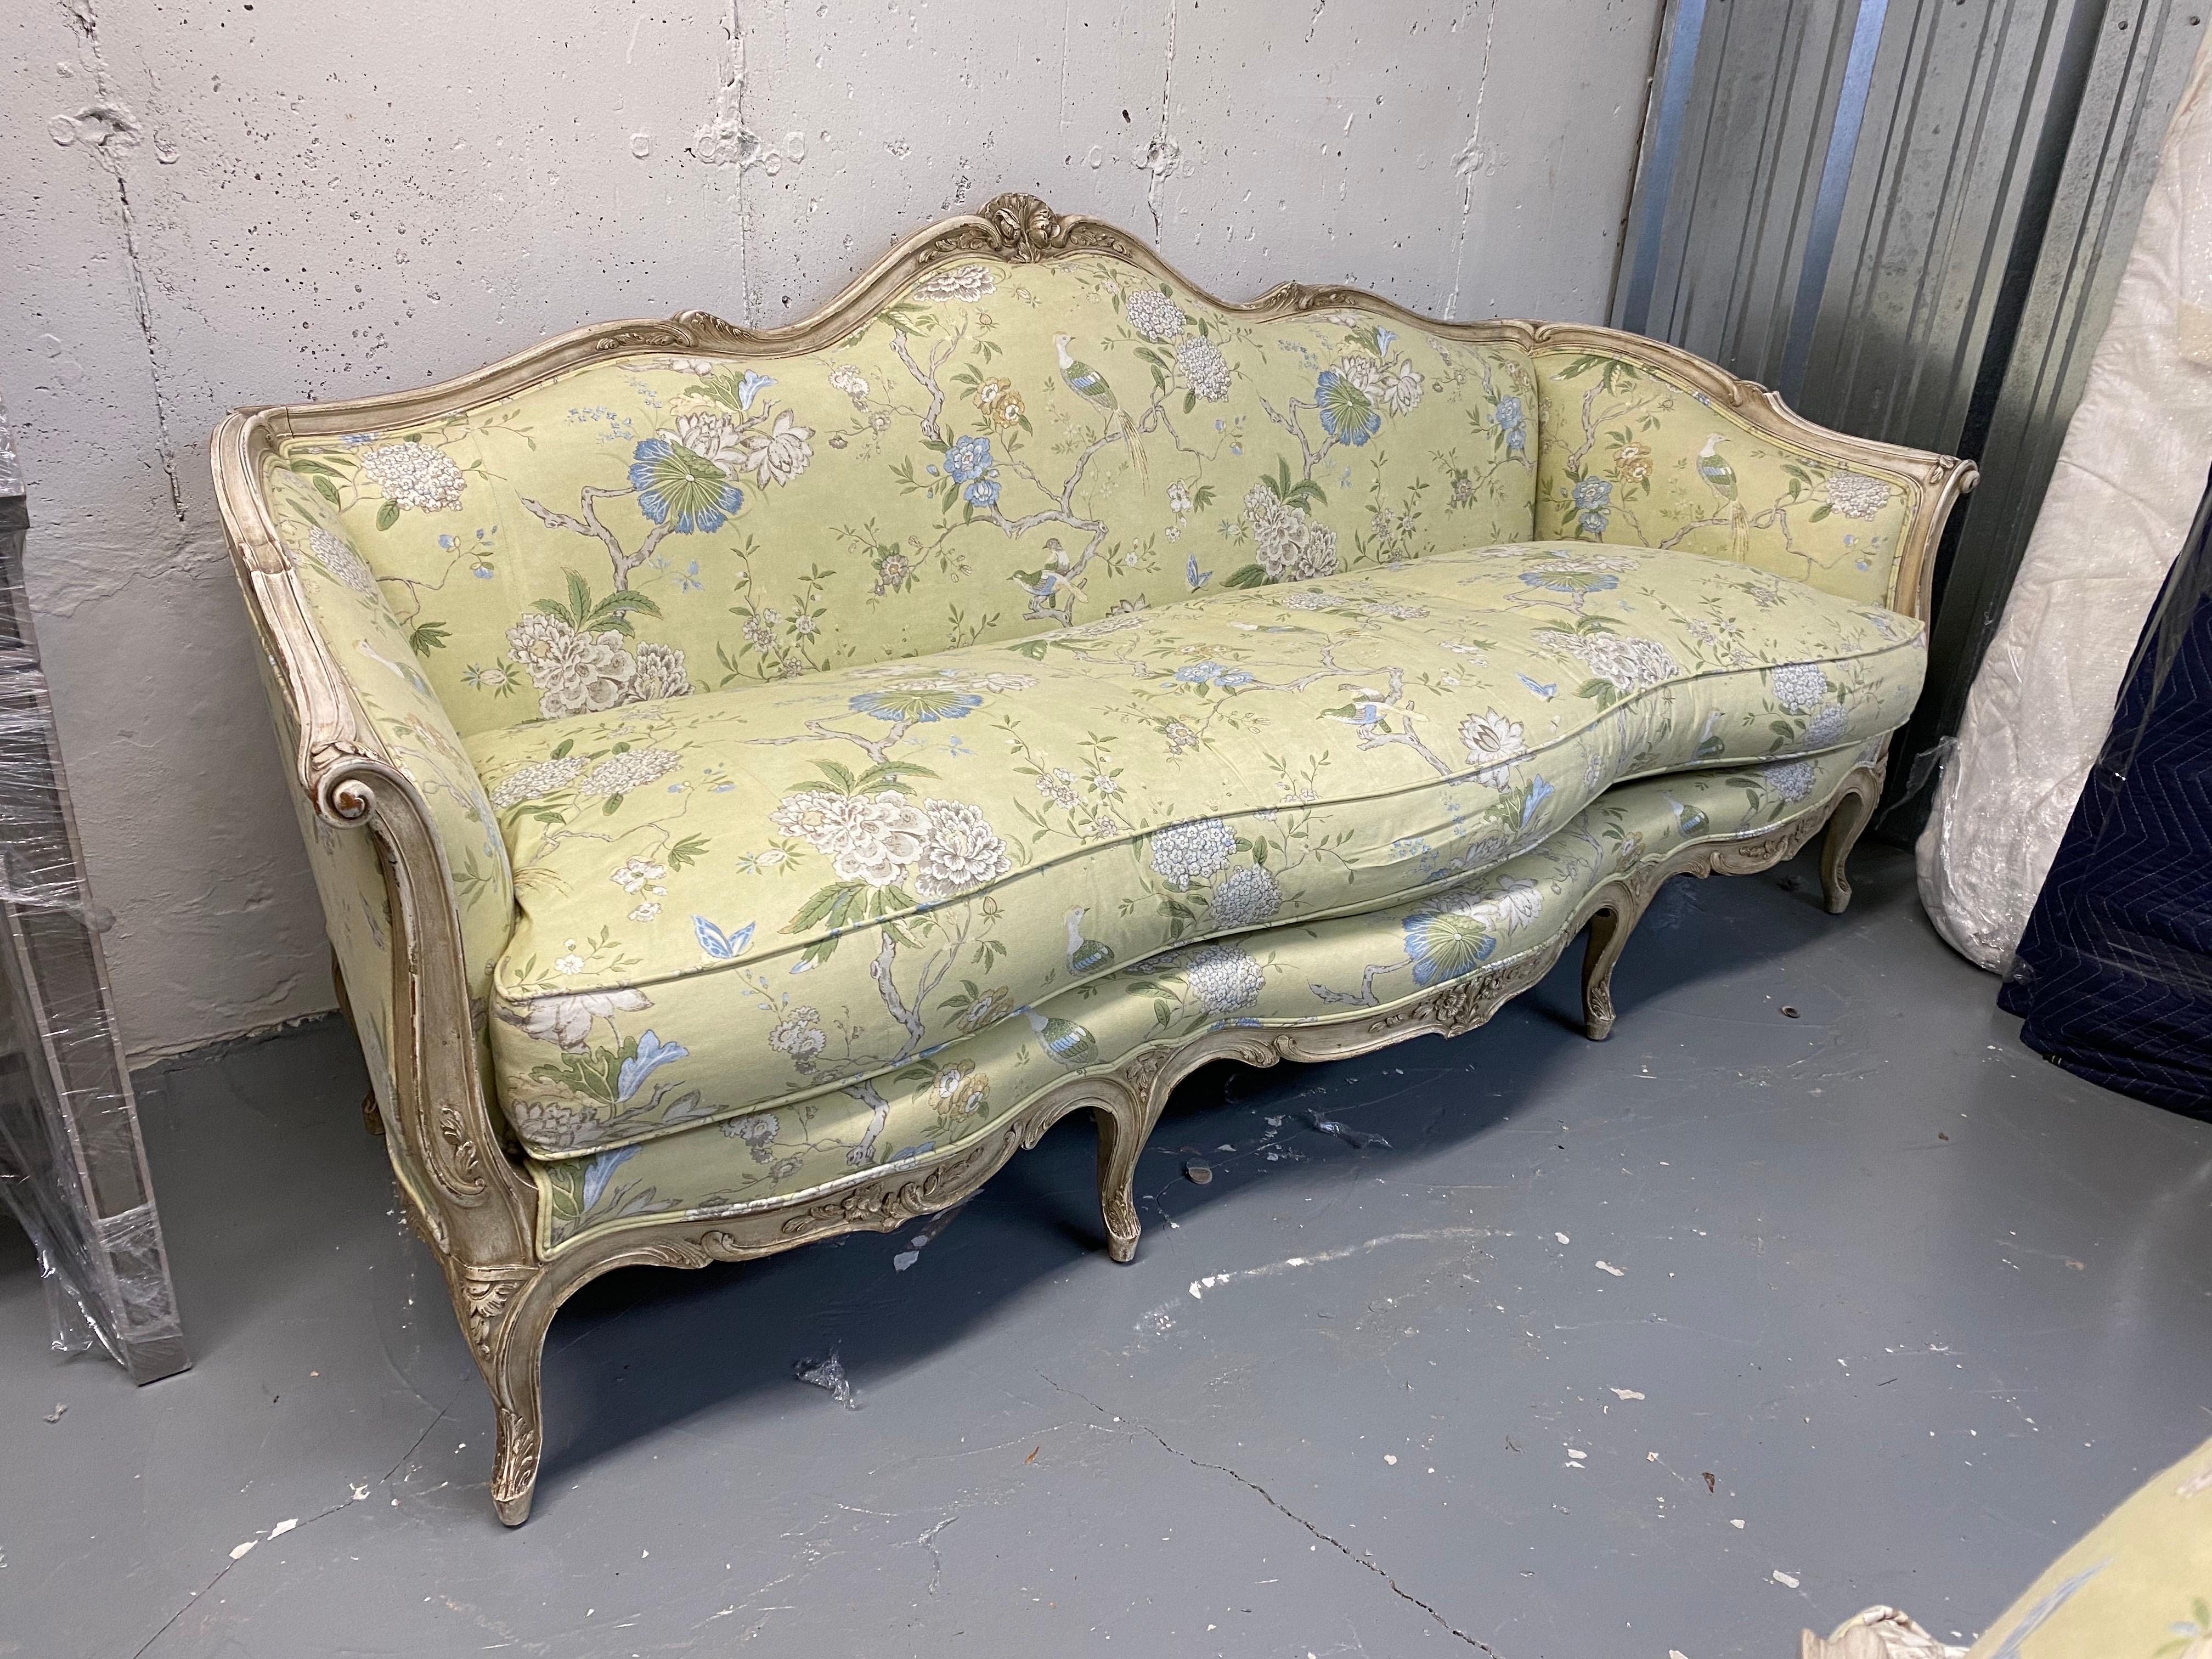 Canapé Upholstering style Louis XV du 20ème siècle
Canapé de style Louis XV en bois lavé blanc, tapissé d'un tissu chinoiserie en coton vert-jaune. L'avant du canapé présente une belle courbe en forme de serpentin. 
Légère usure de la finition des